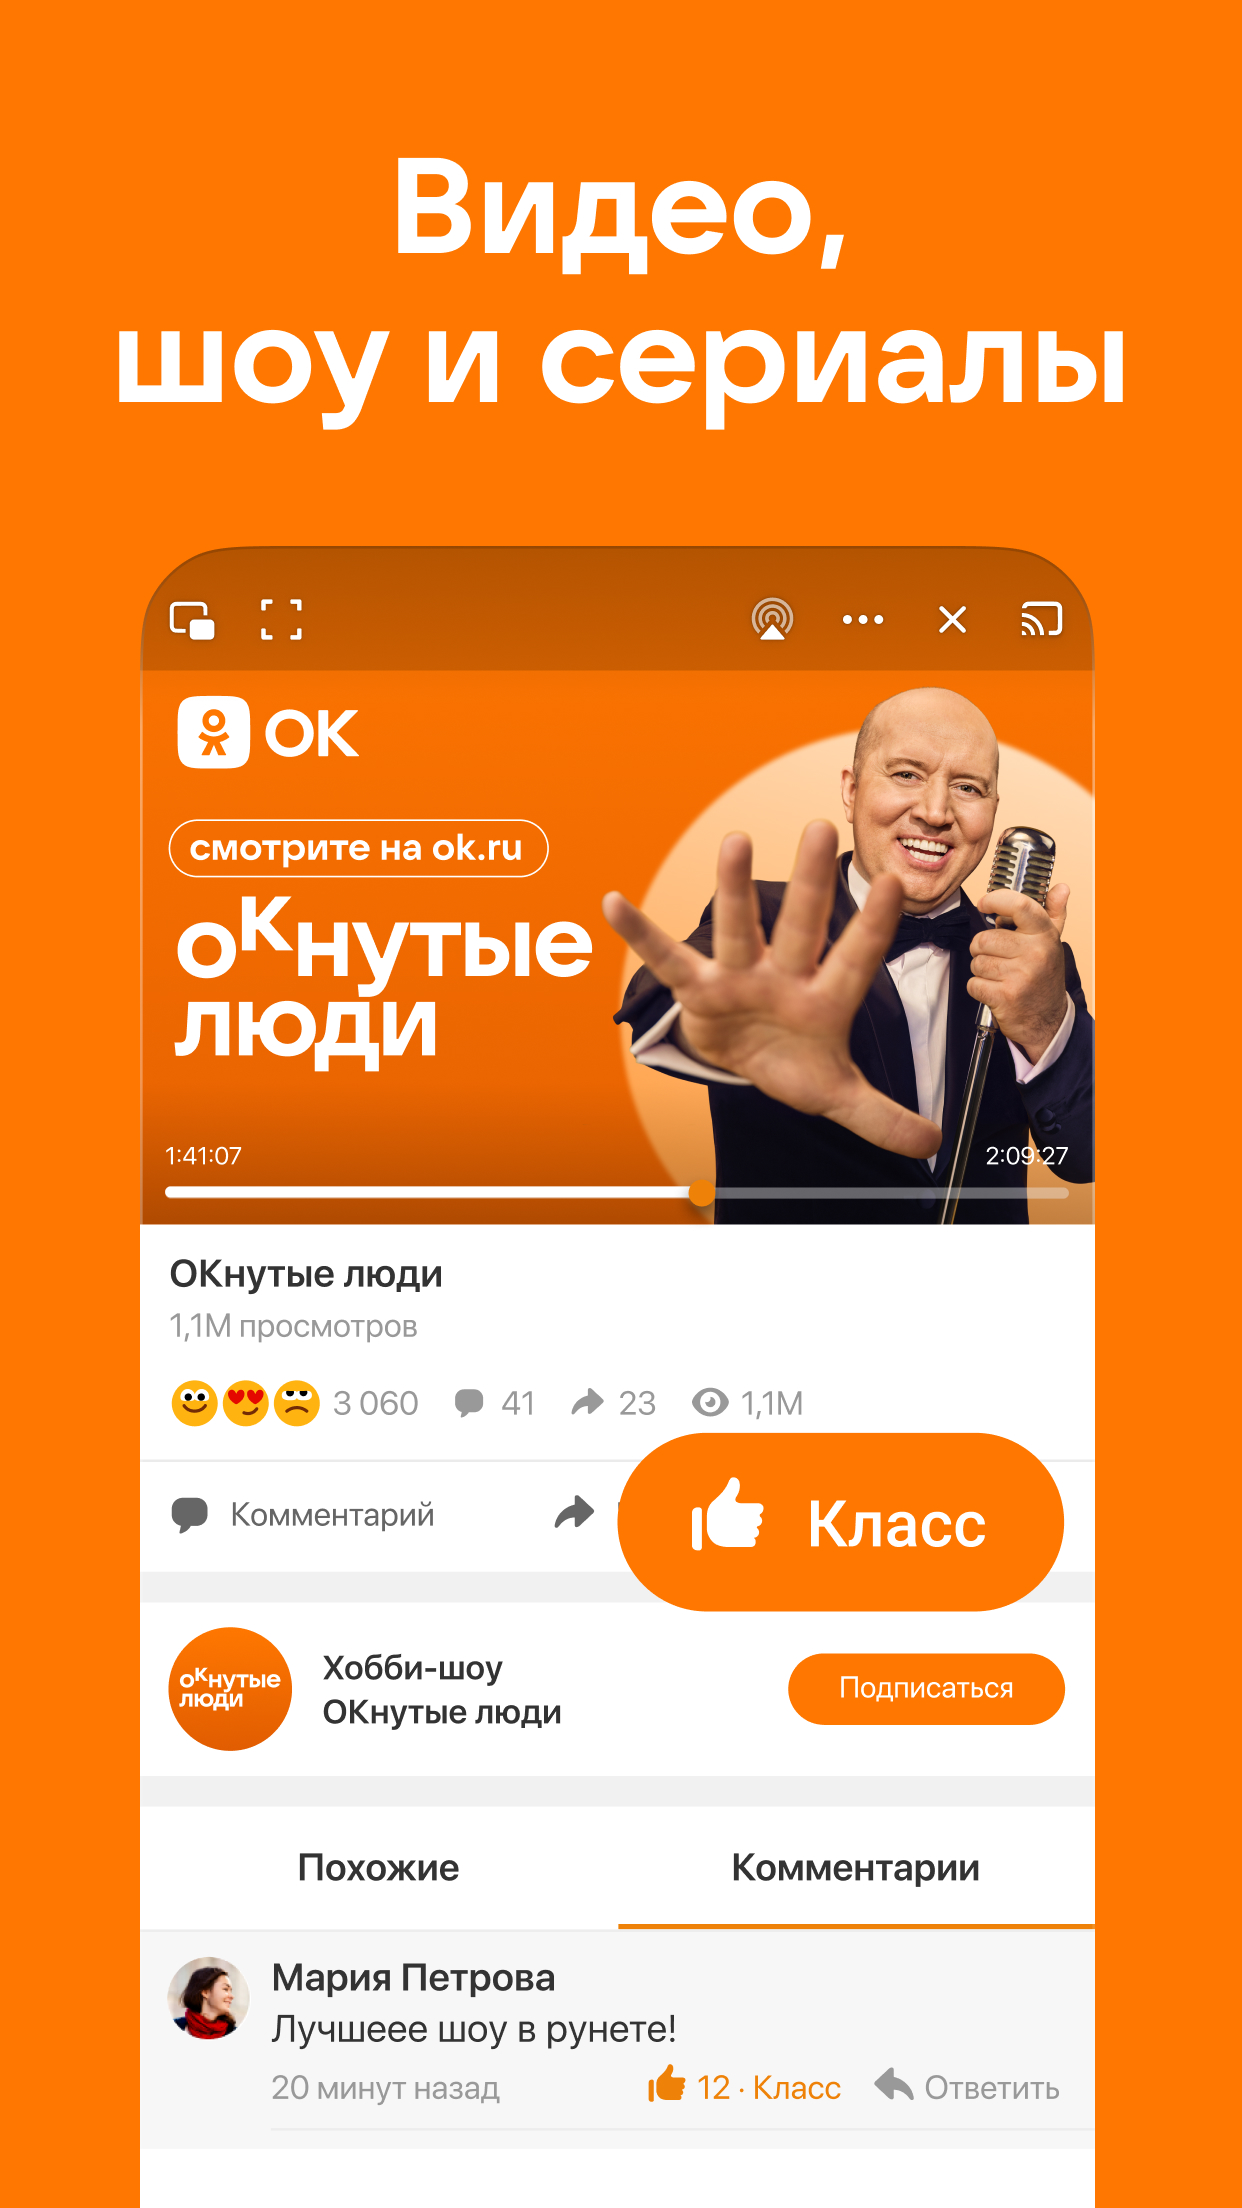 Какая социальная сеть лучше: ВКонтакте, Одноклассники или Facebook? (видео)